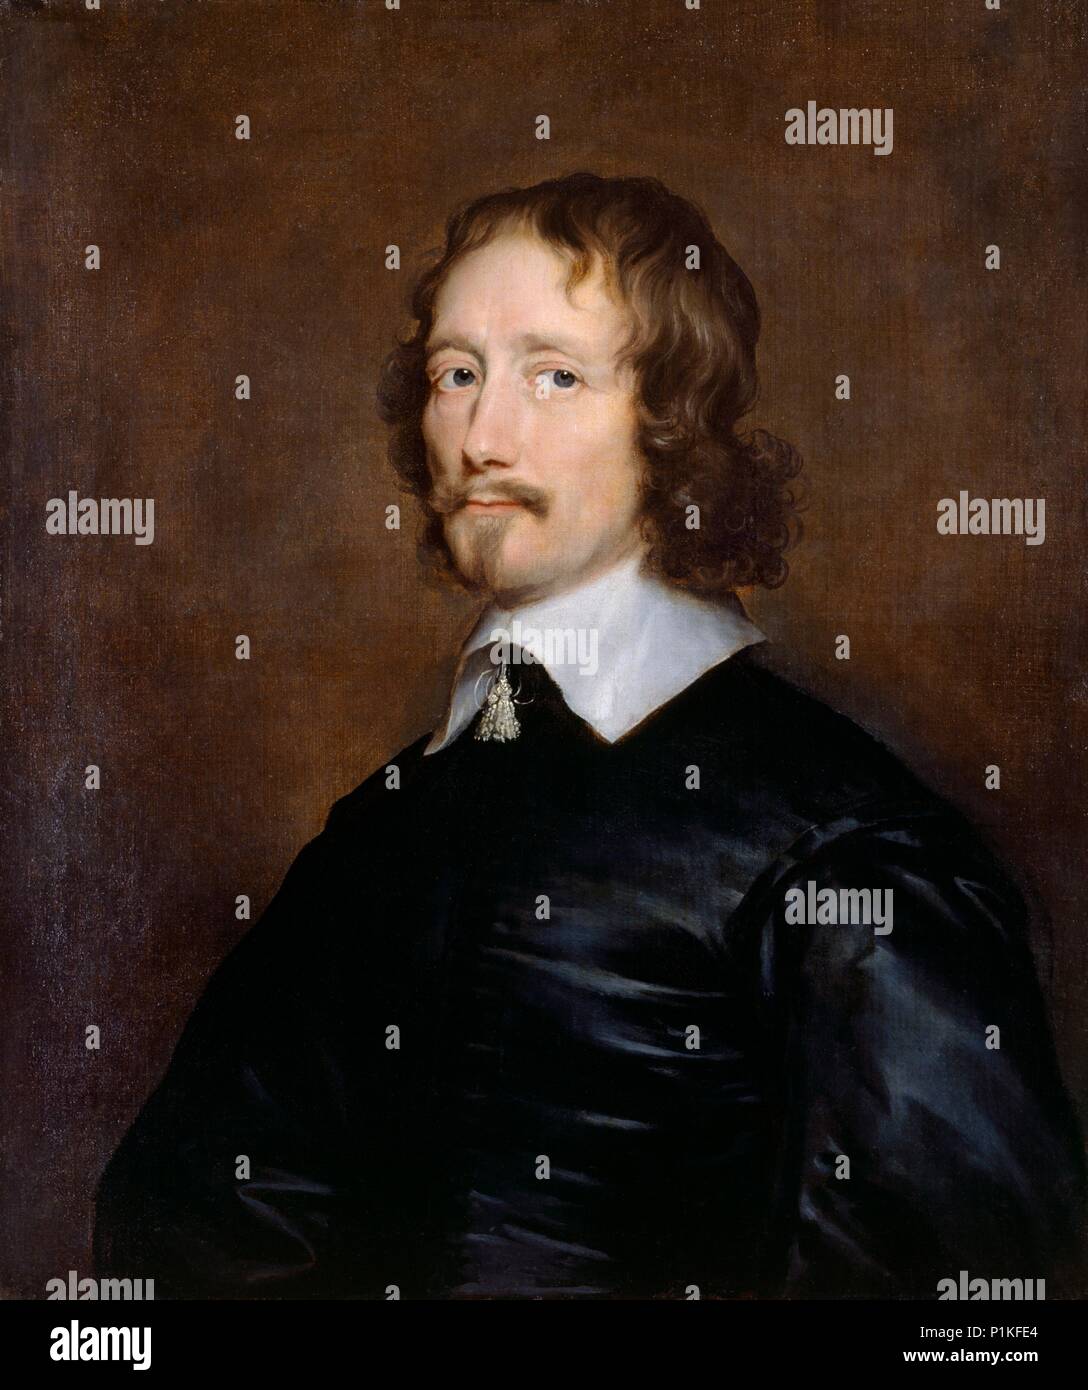 Retrato de John Hampden, políticos ingleses y MP, de mediados del siglo XVII. Artista: William Dobson. Foto de stock